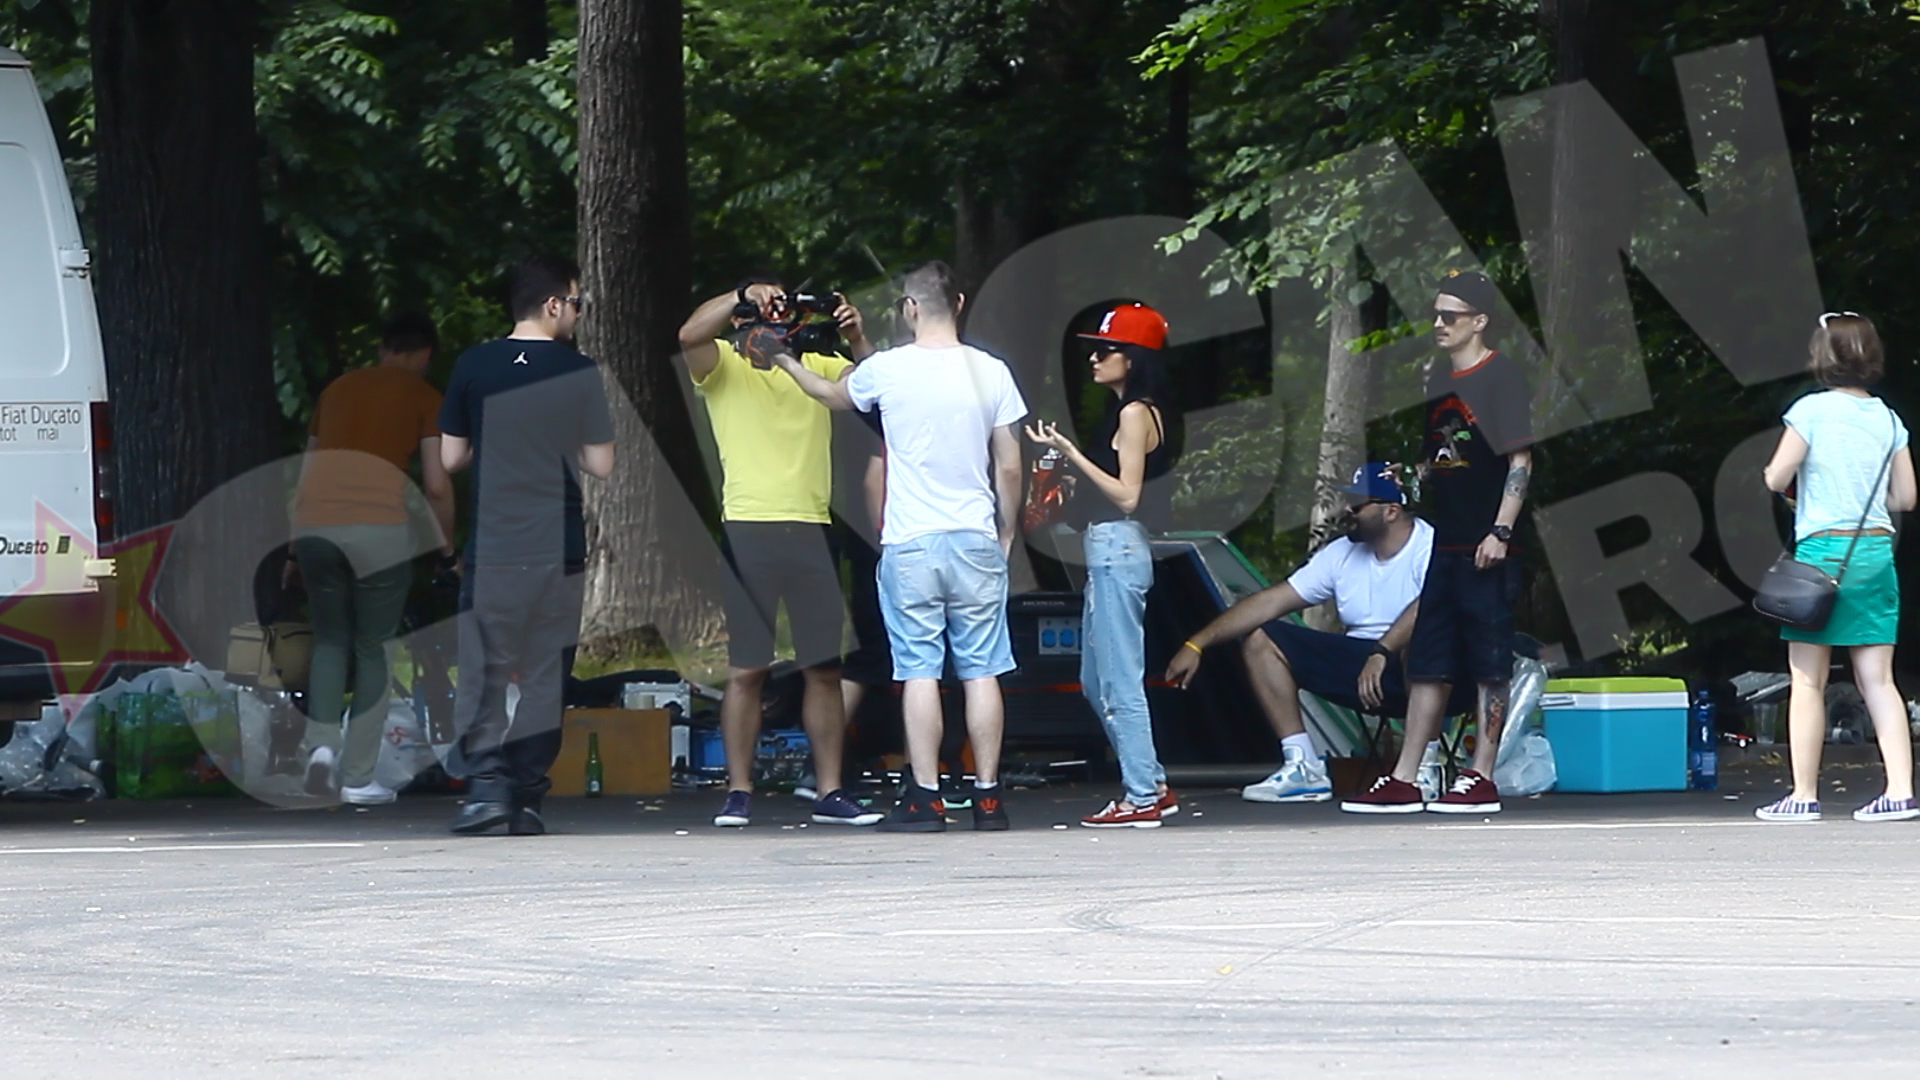 Gasca rapperilor s-a adunat in parc, iar camera de filmat a fost nelipsita